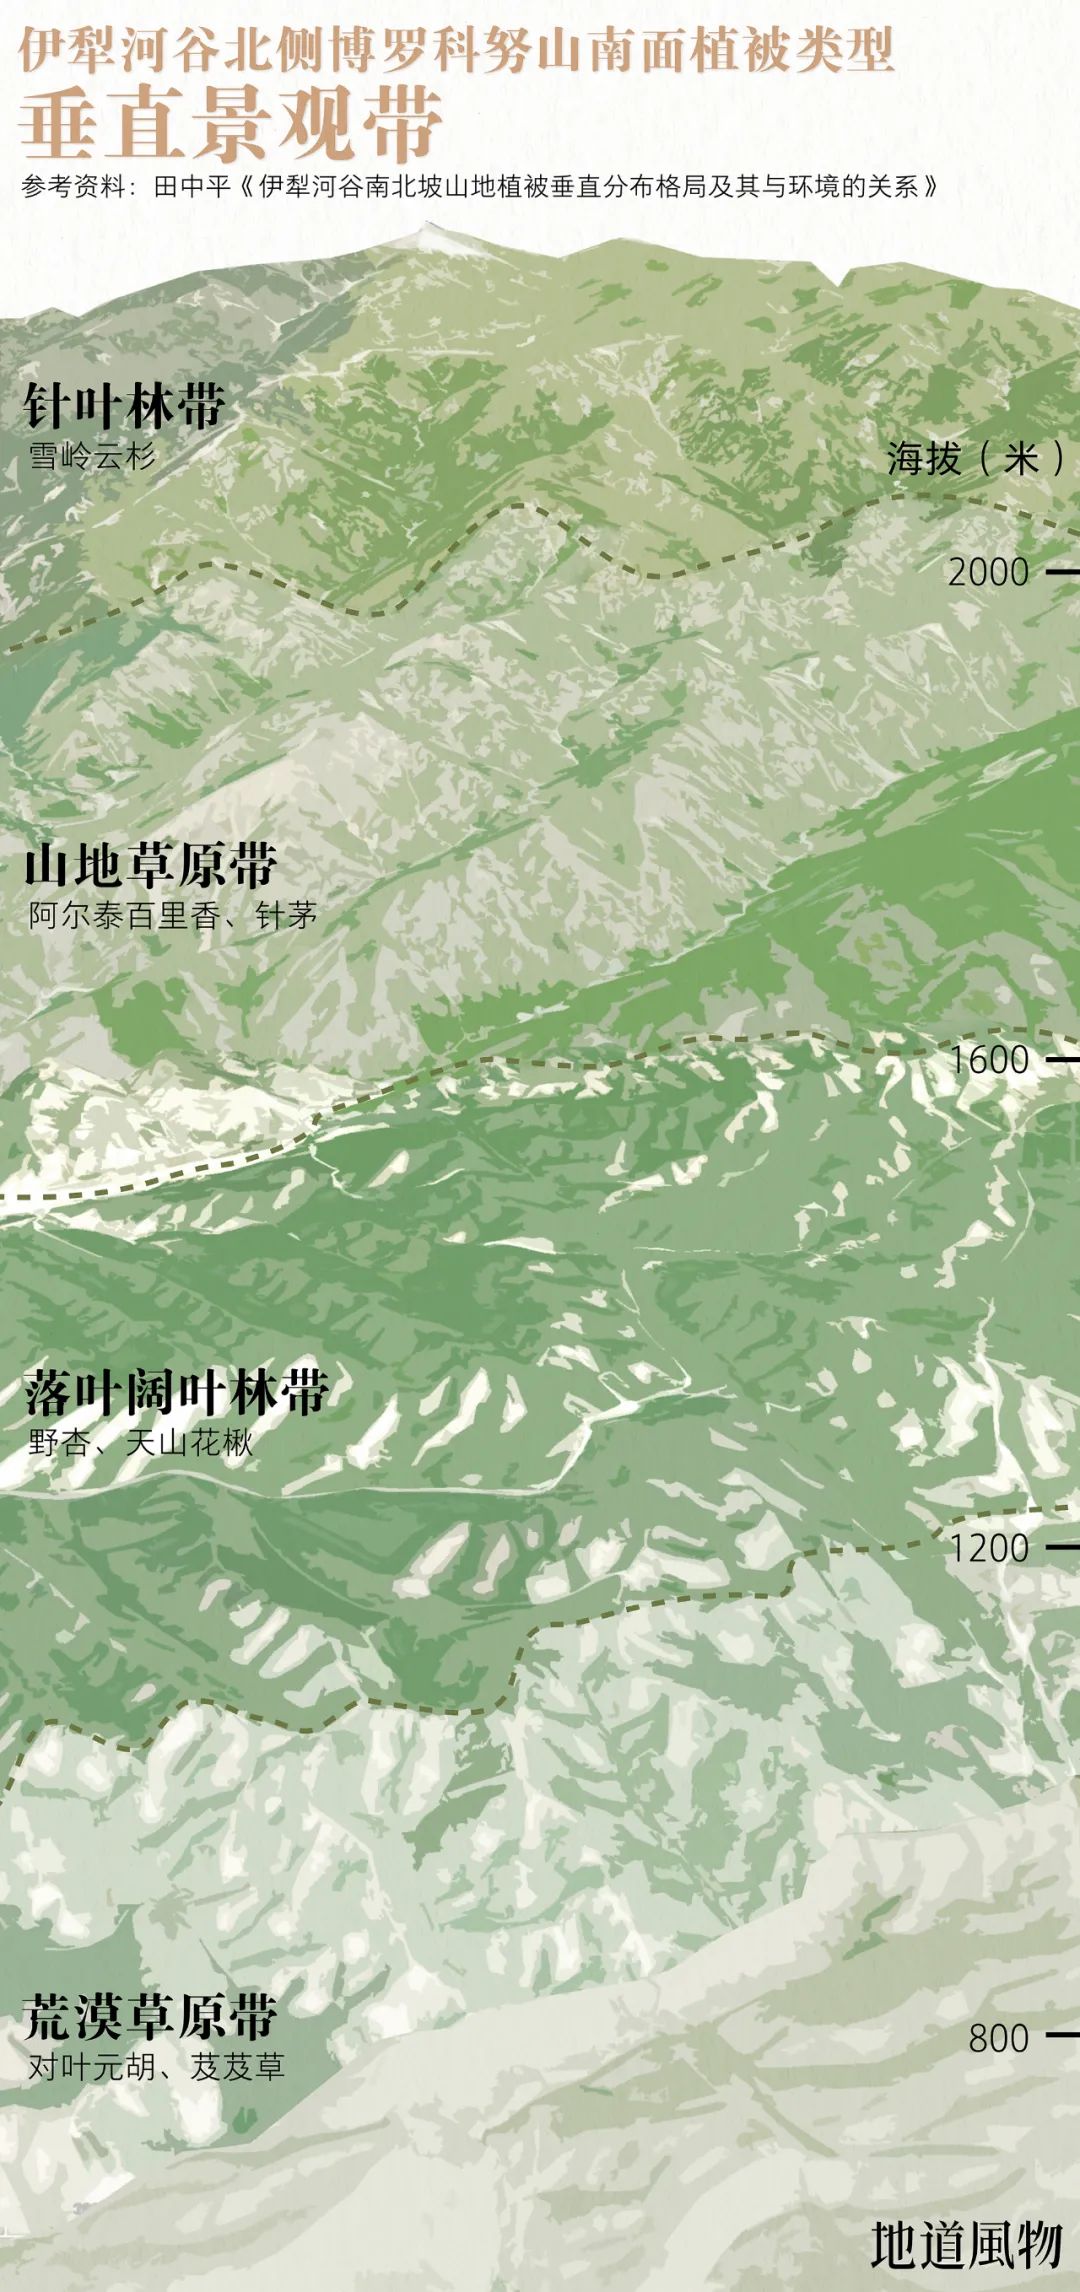  迎风的伊犁河谷北侧，降水相对丰富，山地植被也更为茂盛。 制图 /F50BB